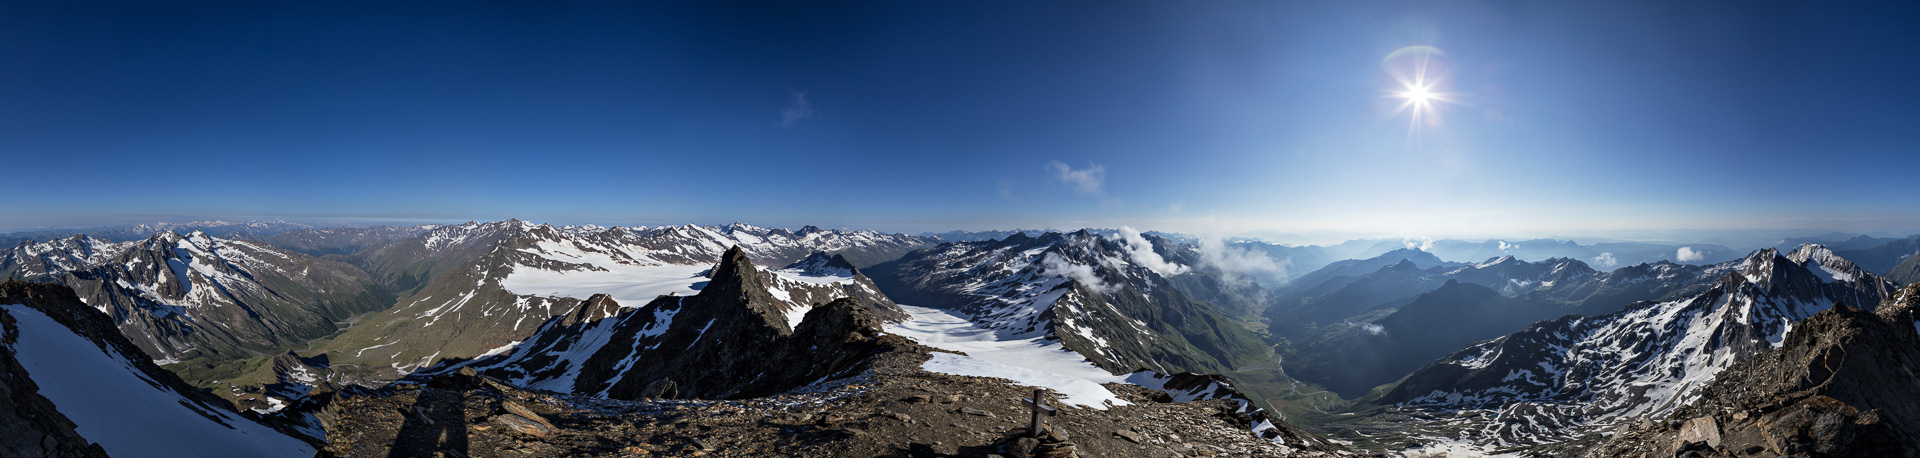 Ortlergruppe, Bernina und die Ötztaler Alpen auf der linken Seite; Stubaier, Zillertaler Alpen und Dolomiten auf der rechten Seite.